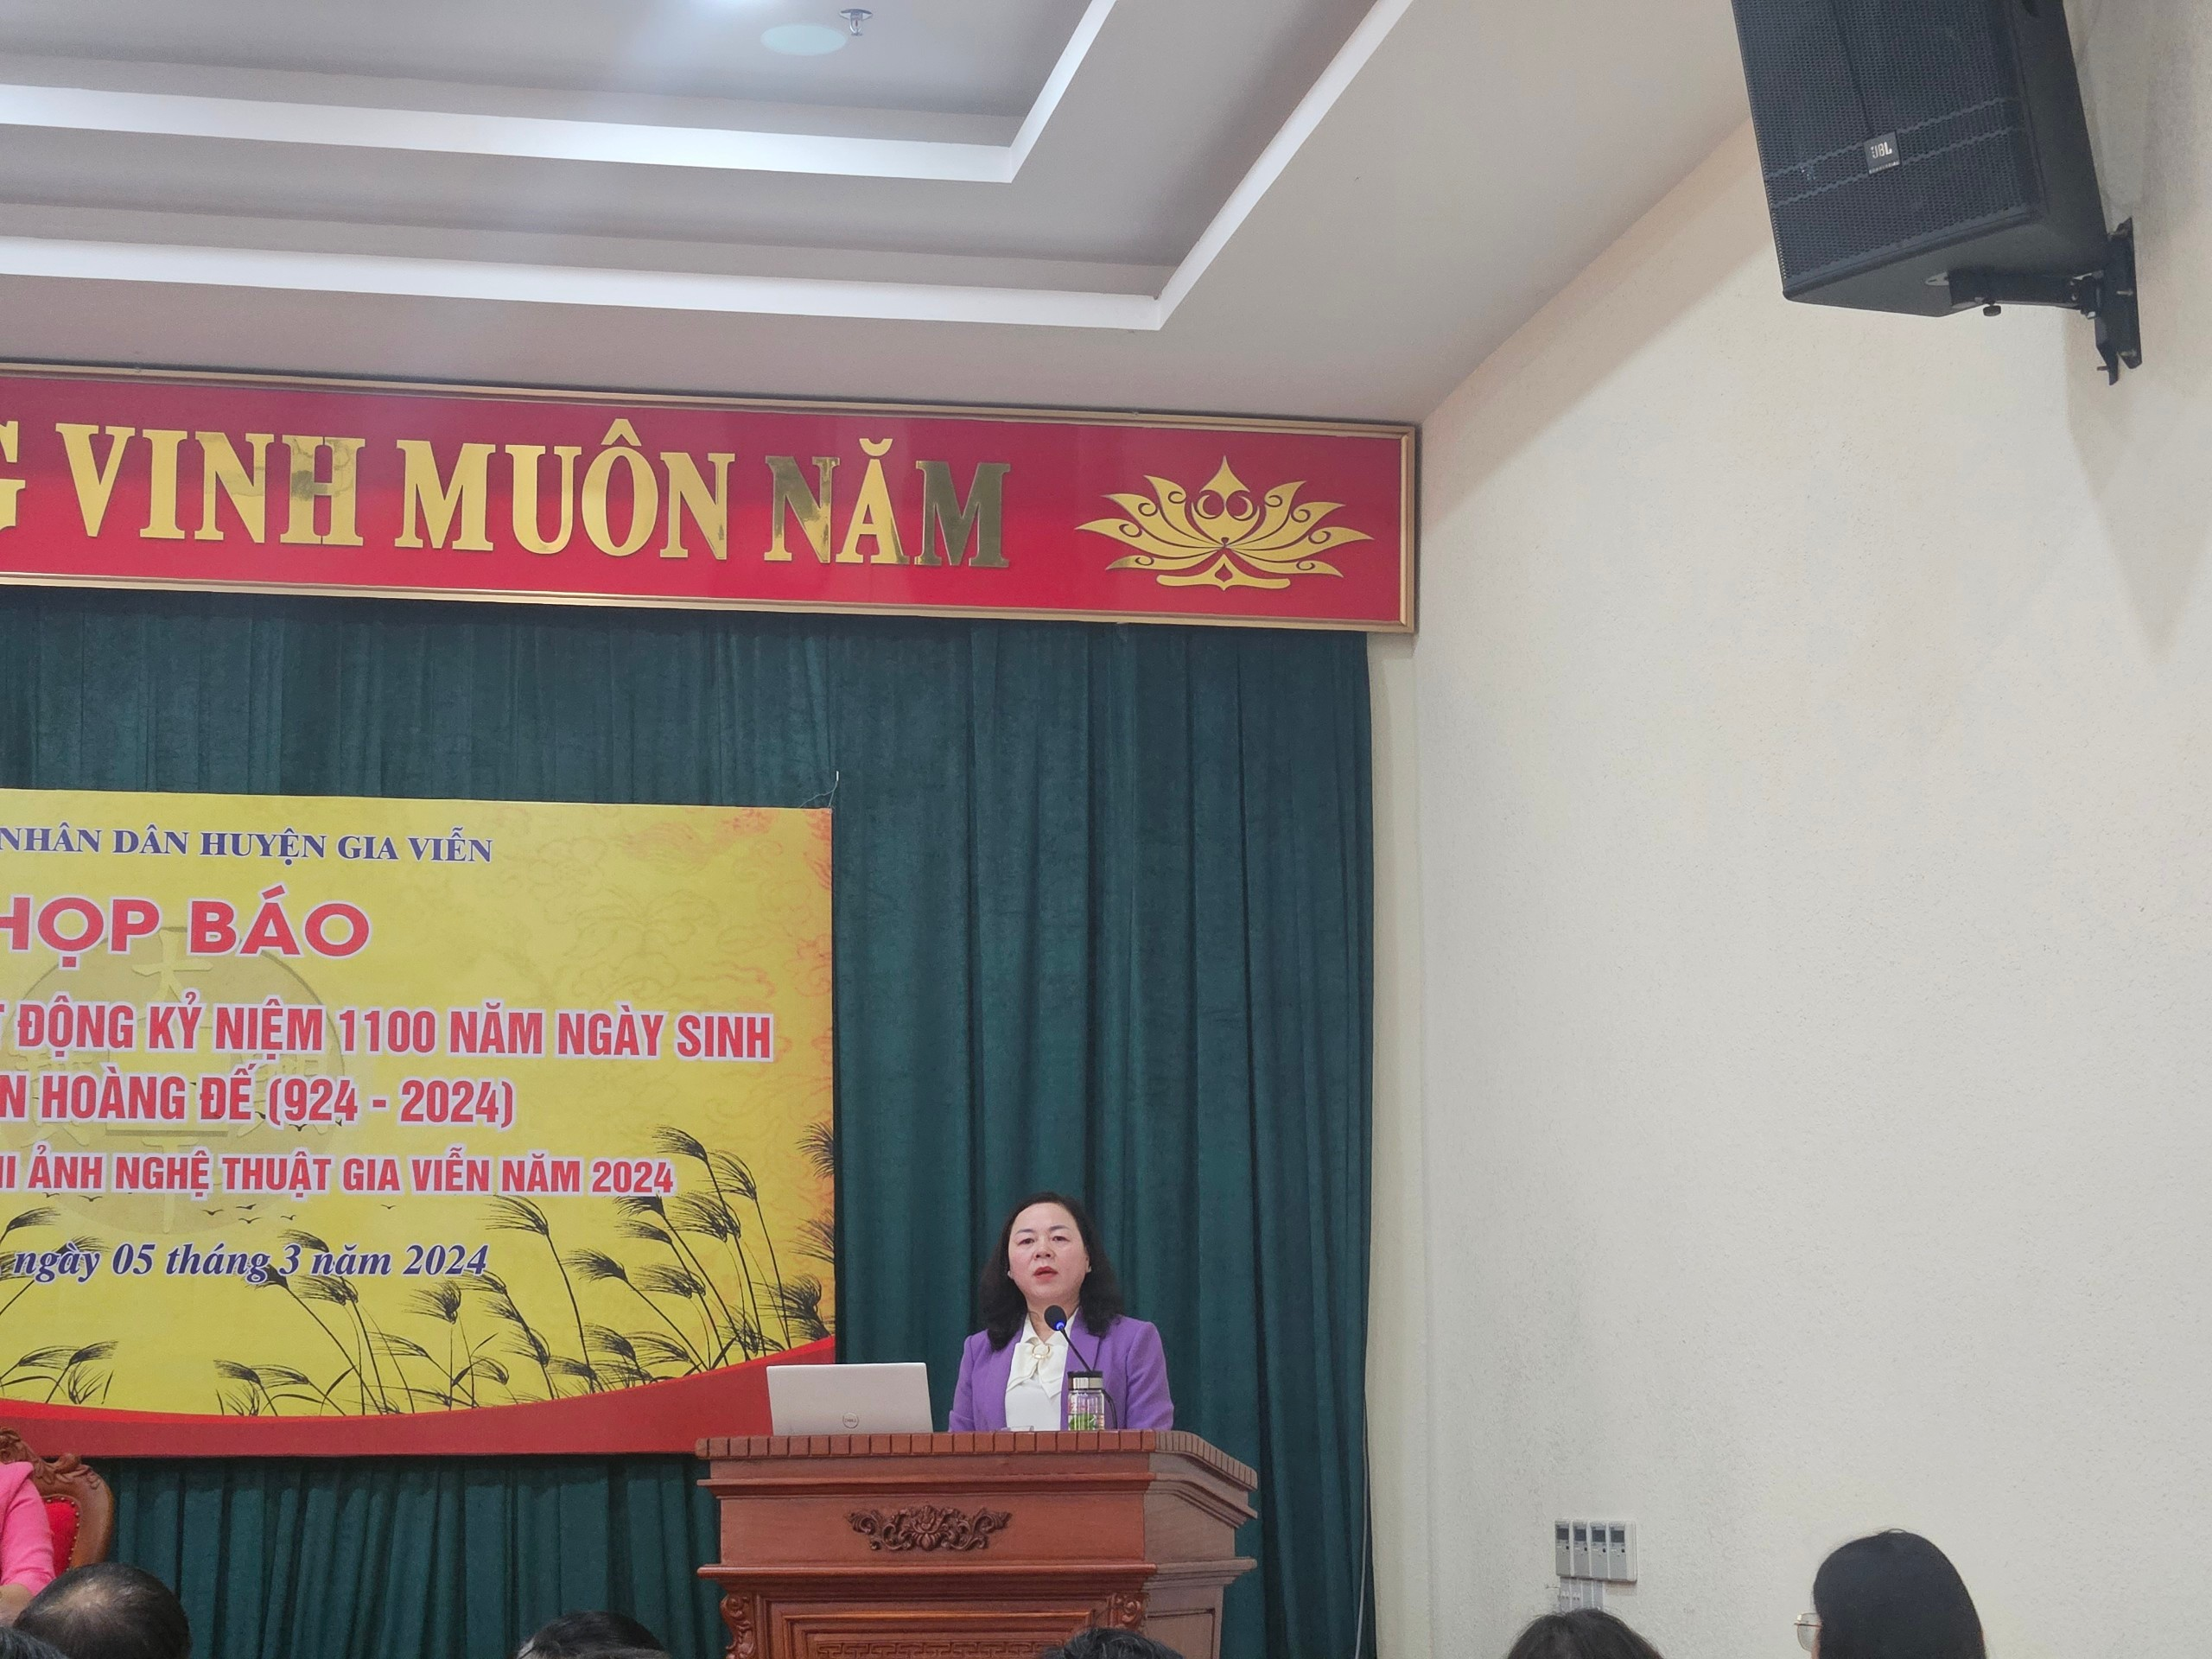 Bà Lưu Thị Huyền – Phó Bí thư thường trực Huyện ủy Gia Viễn phát biểu chỉ đạo tại buổi họp báo.